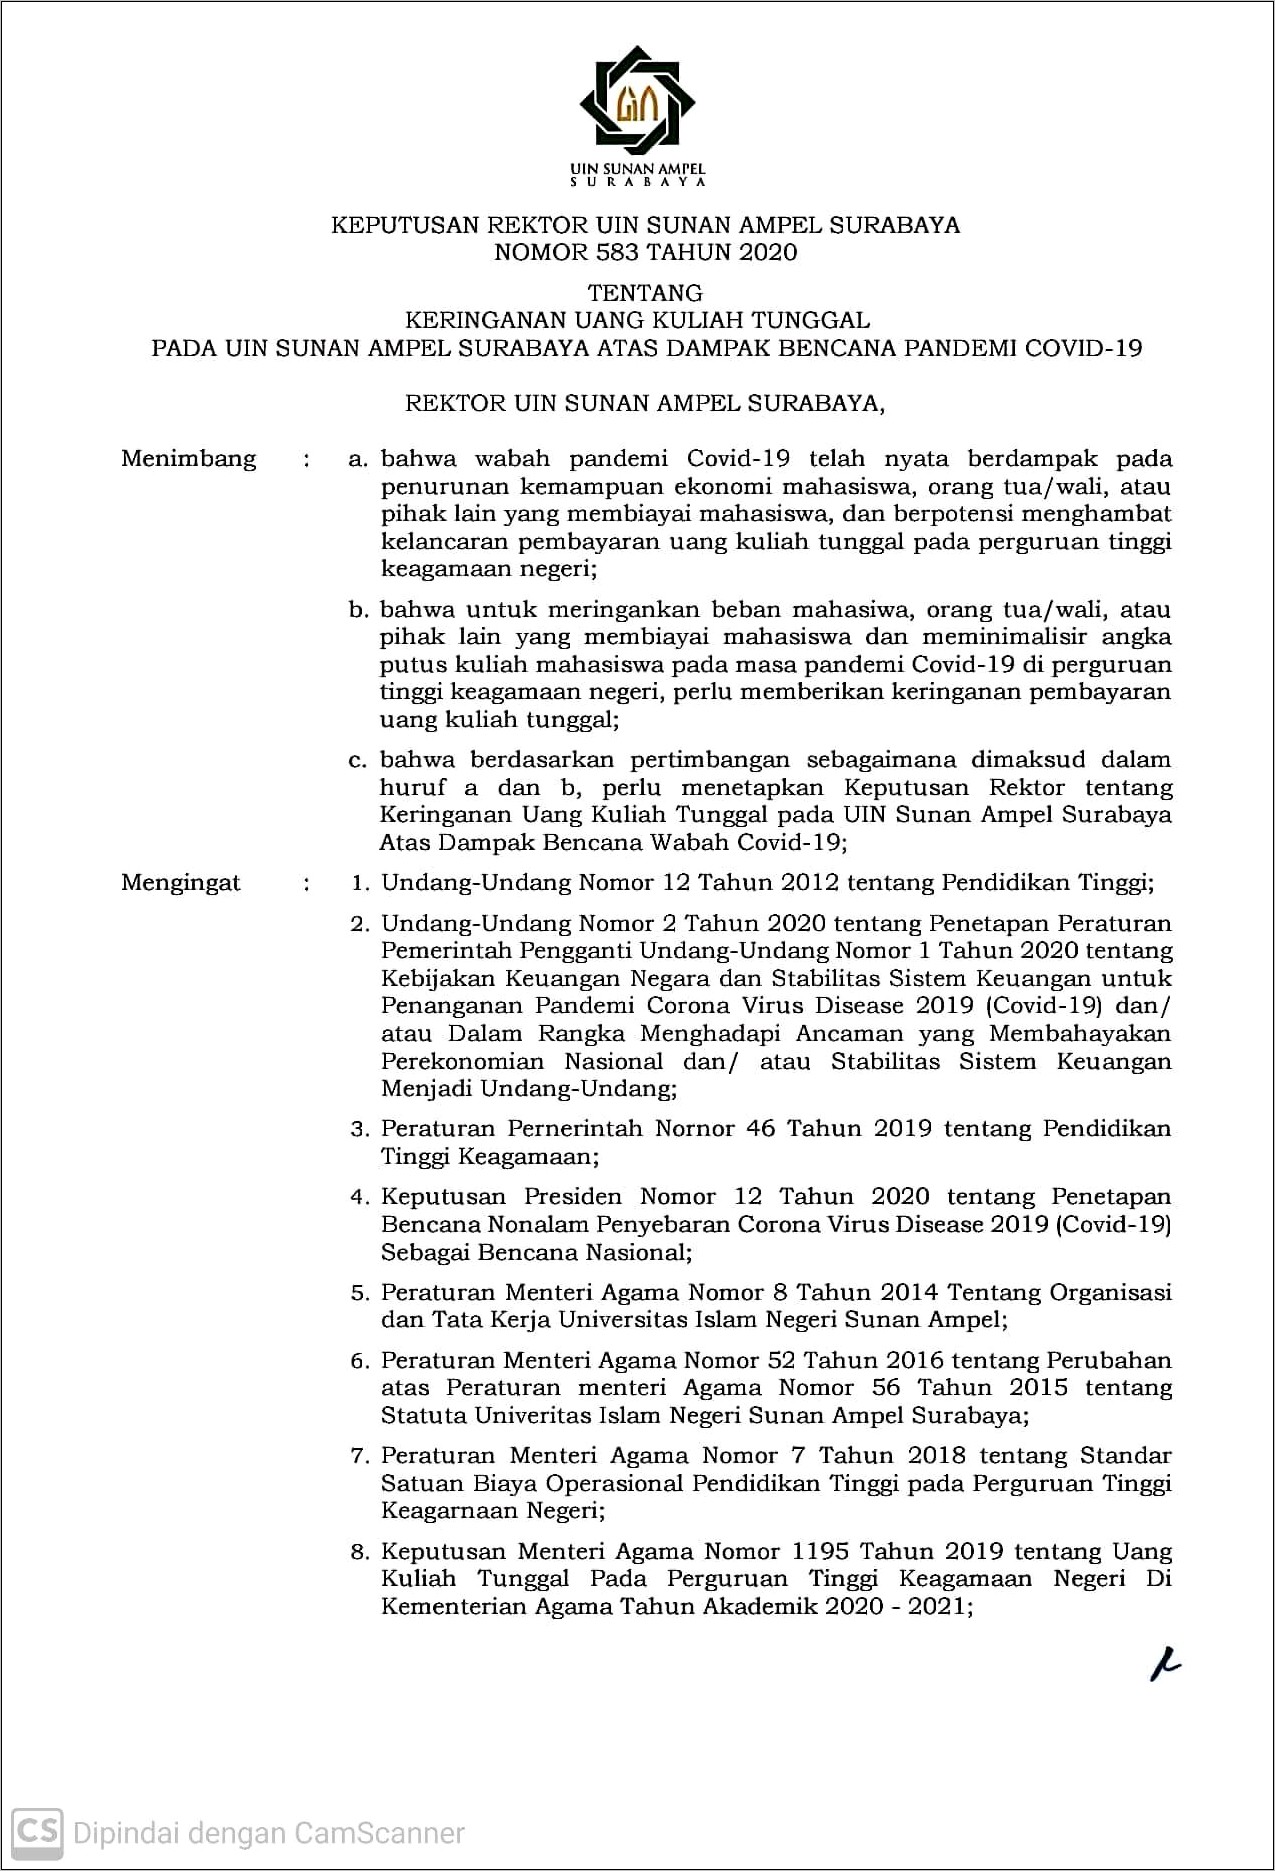 Contoh Surat Permohonan Penghapusan Sanksi Di Universitas Wm Surabaya